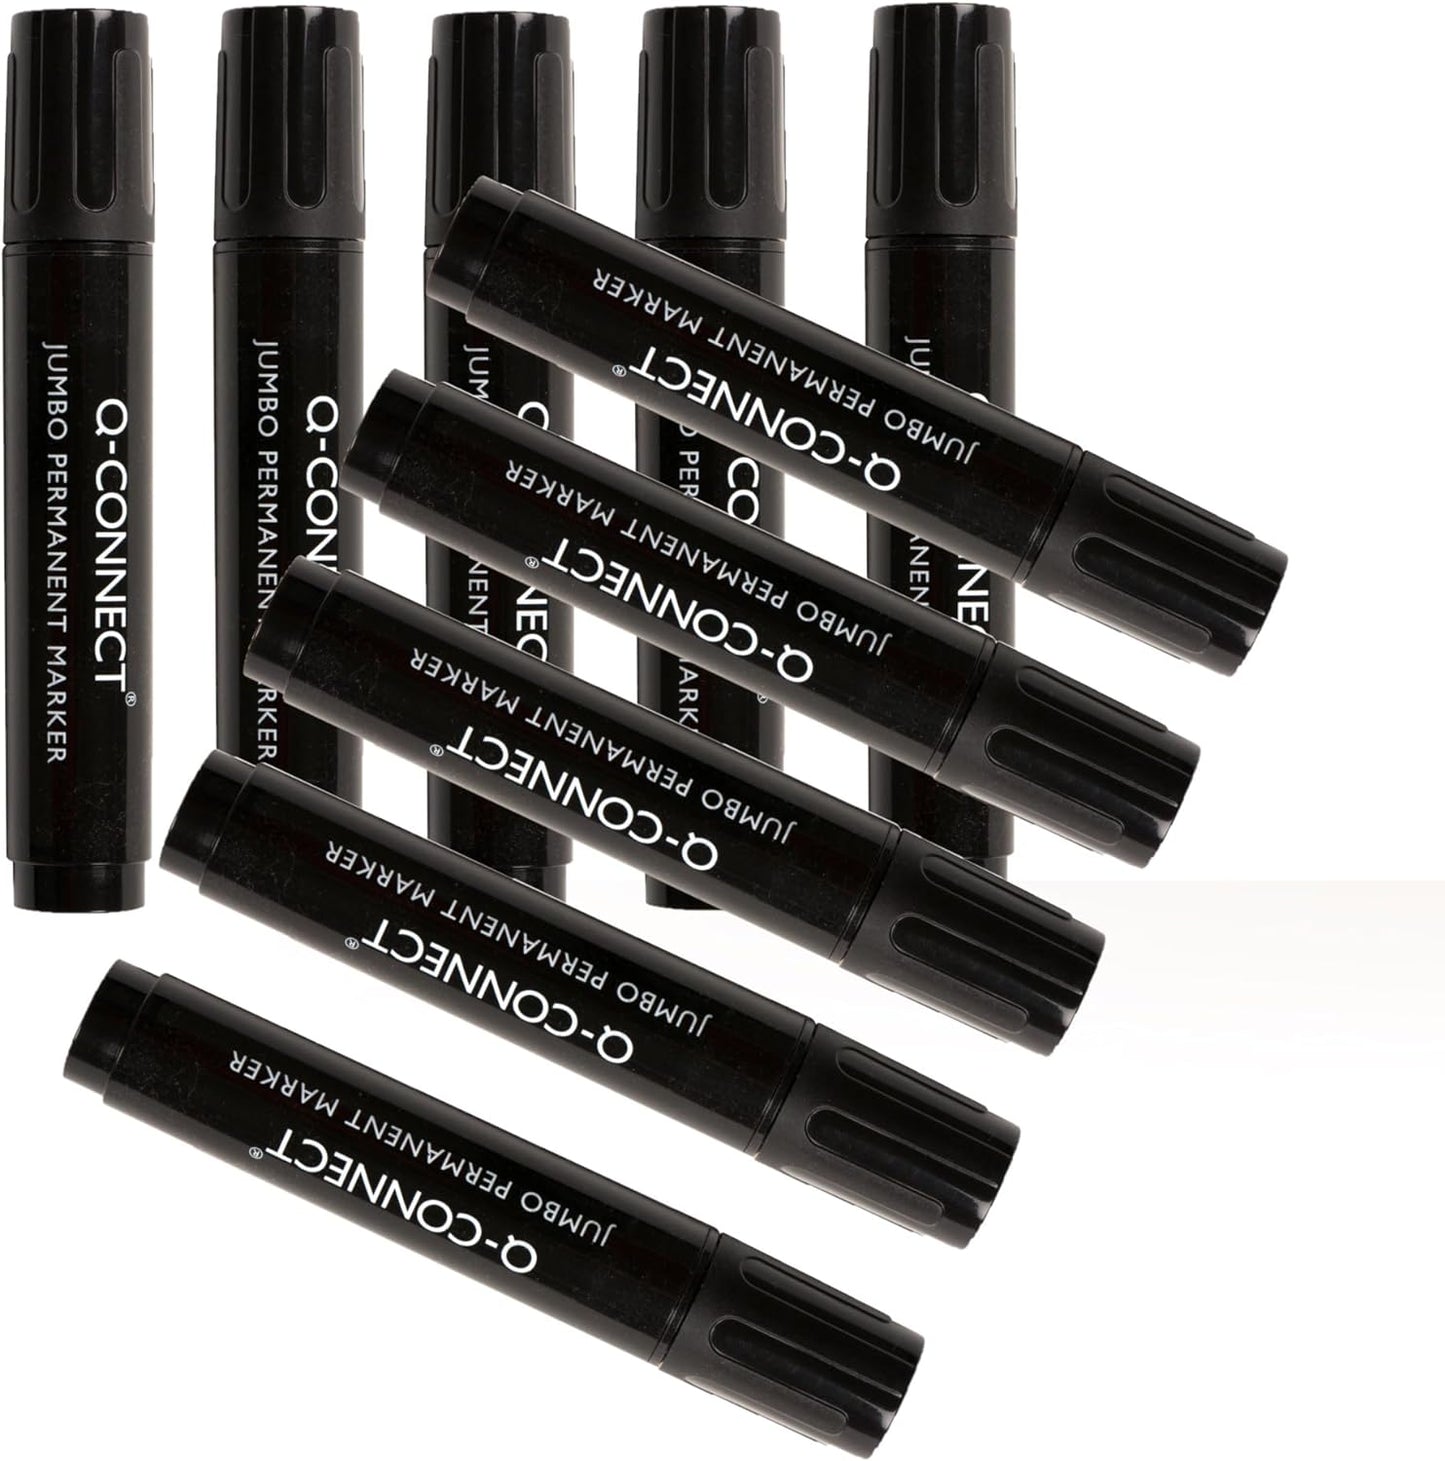 Pack of 10 Jumbo Permanent Chisel Tip Black Marker Pens